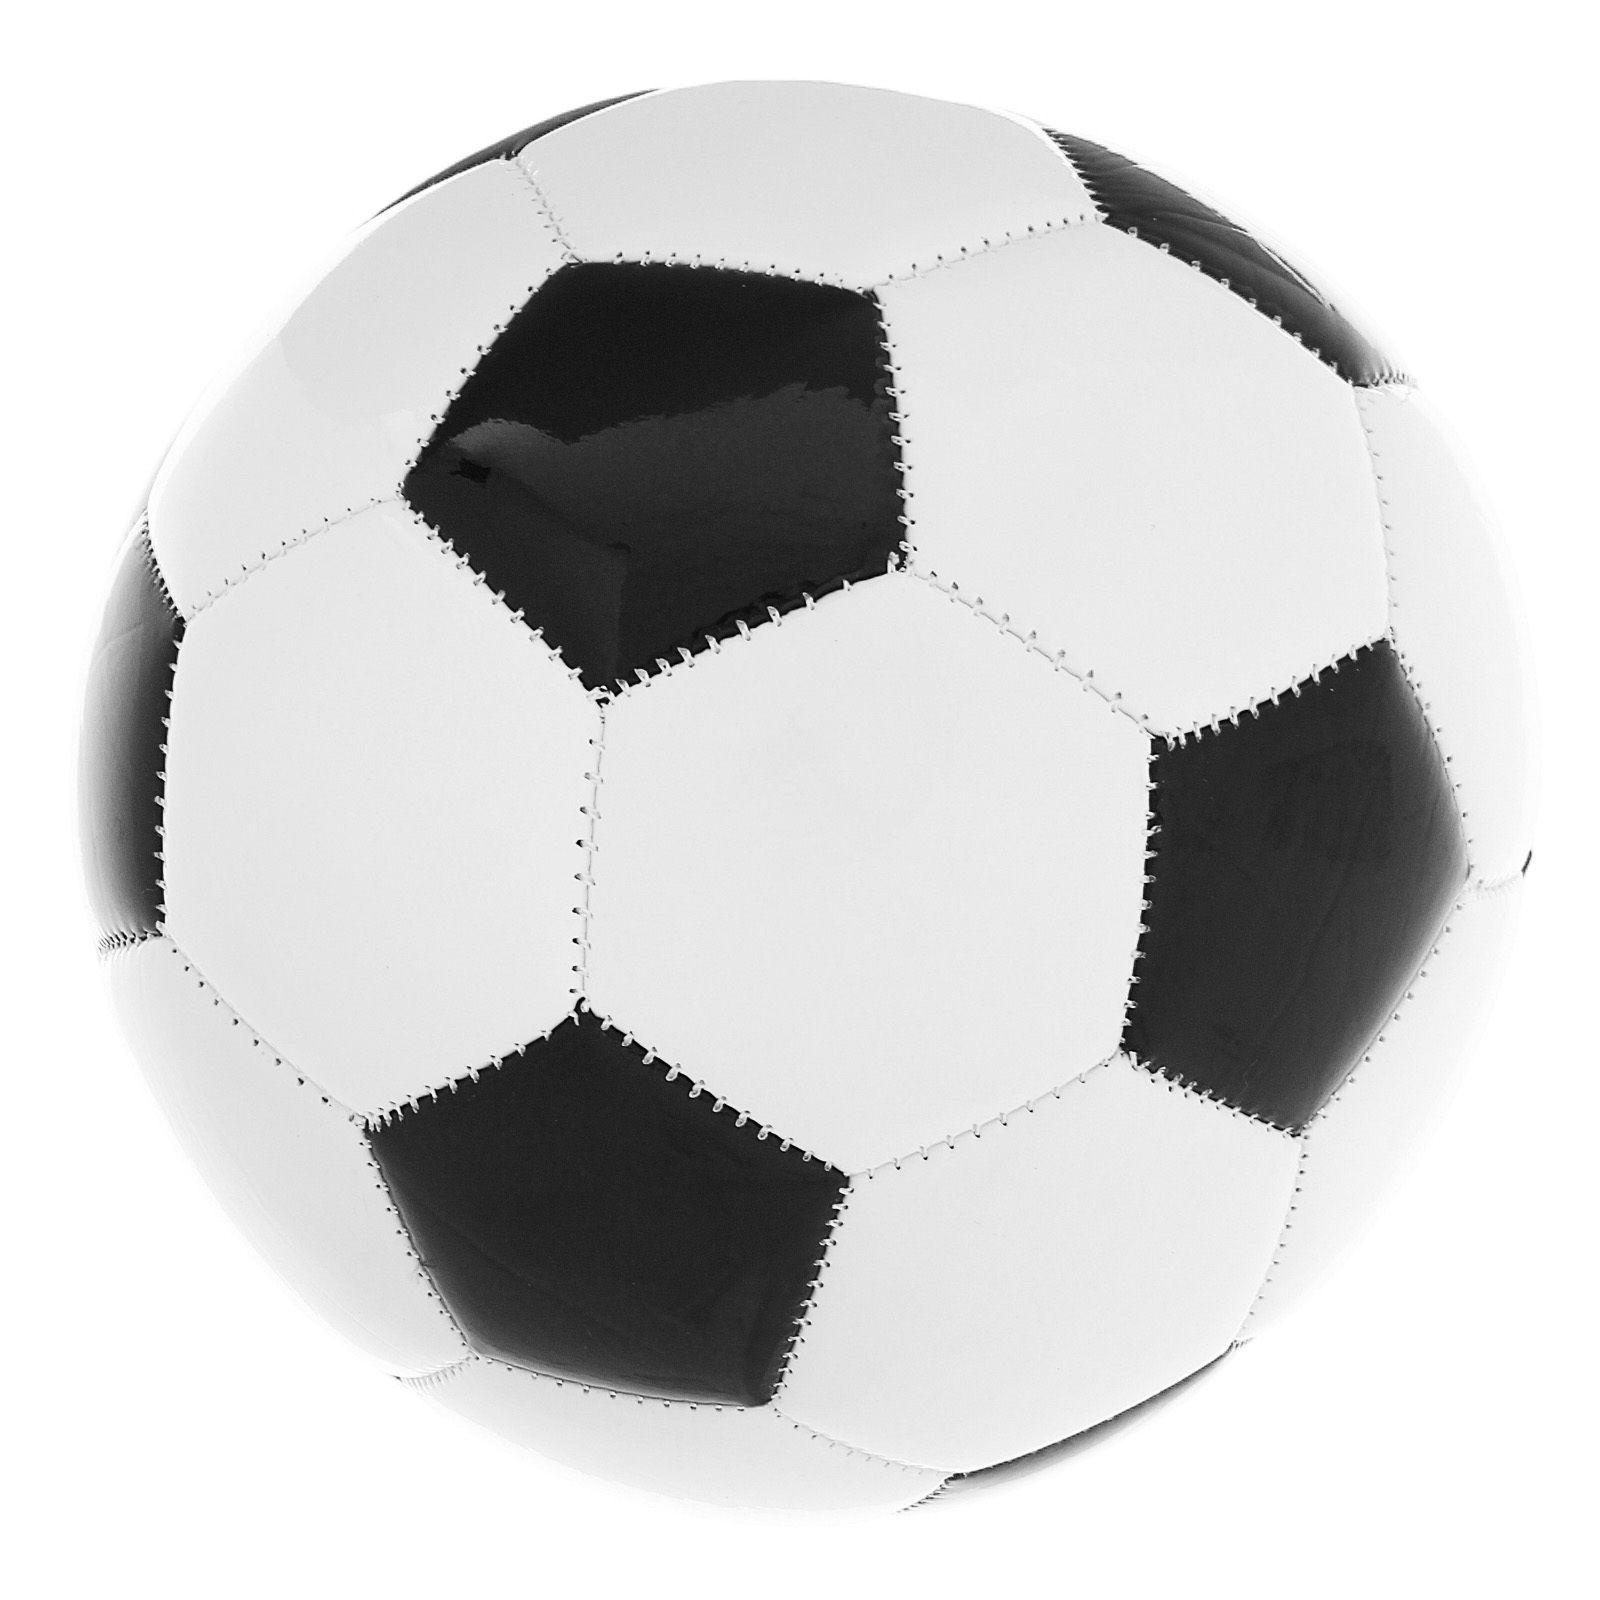 Мяч футбольный Classic